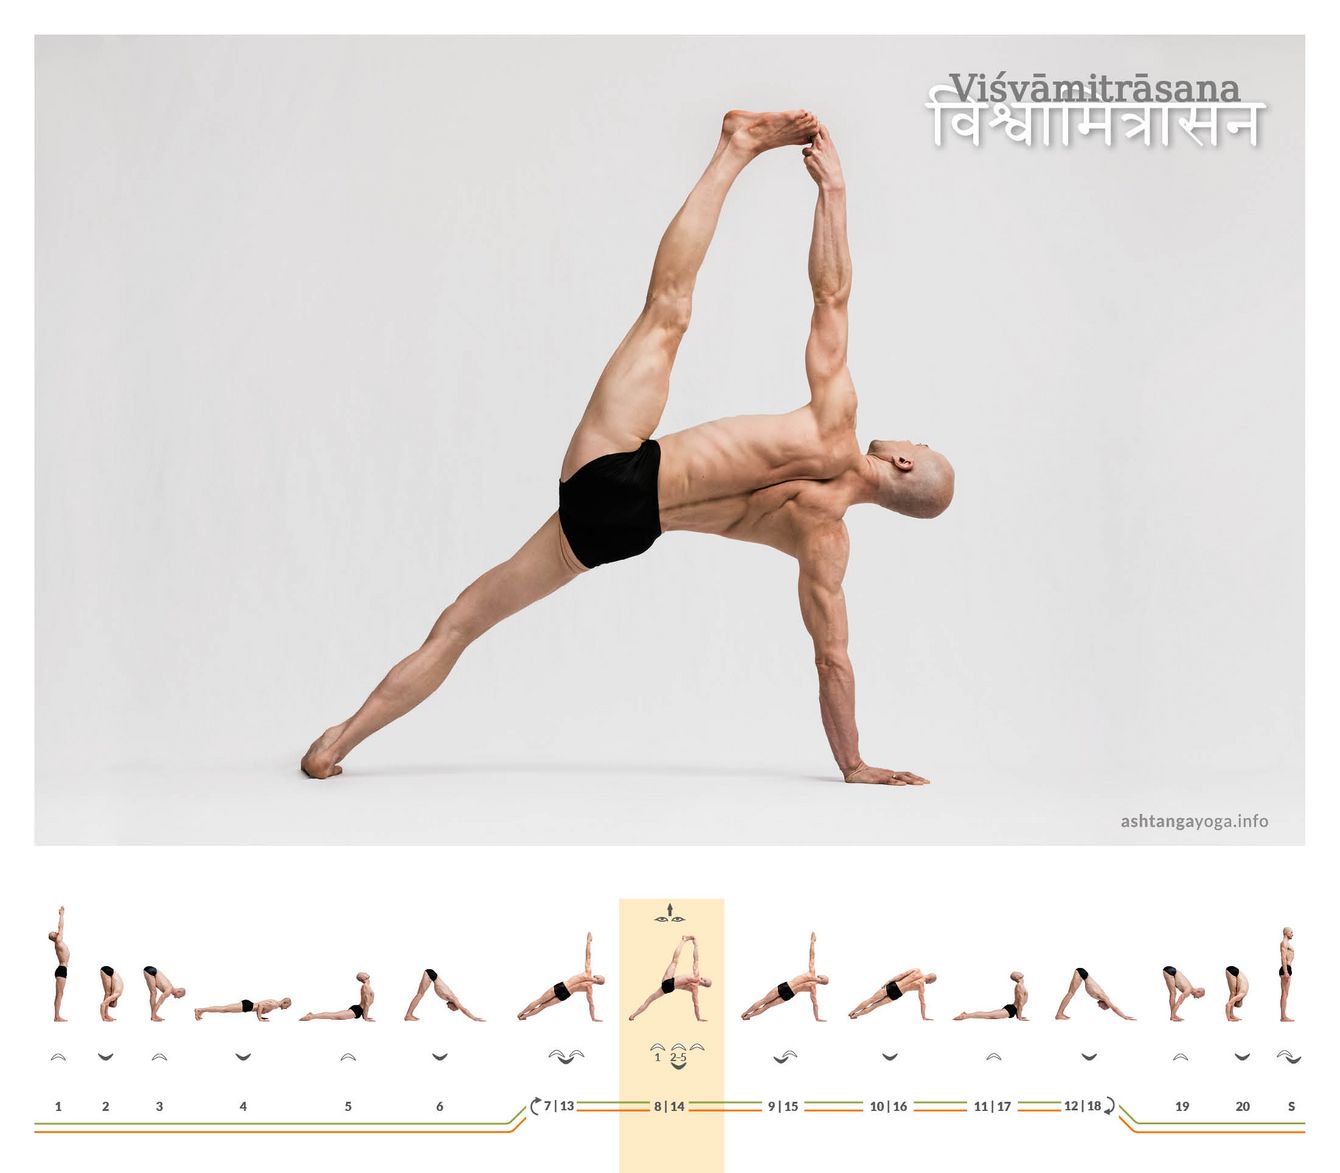 Die “Nach Vishvamitra benannte Haltung" ist ein kraftvoller Seitstütz. Arm und Bein der nicht stützenden Körperseite wachsen dabei elegant himmelwärts.